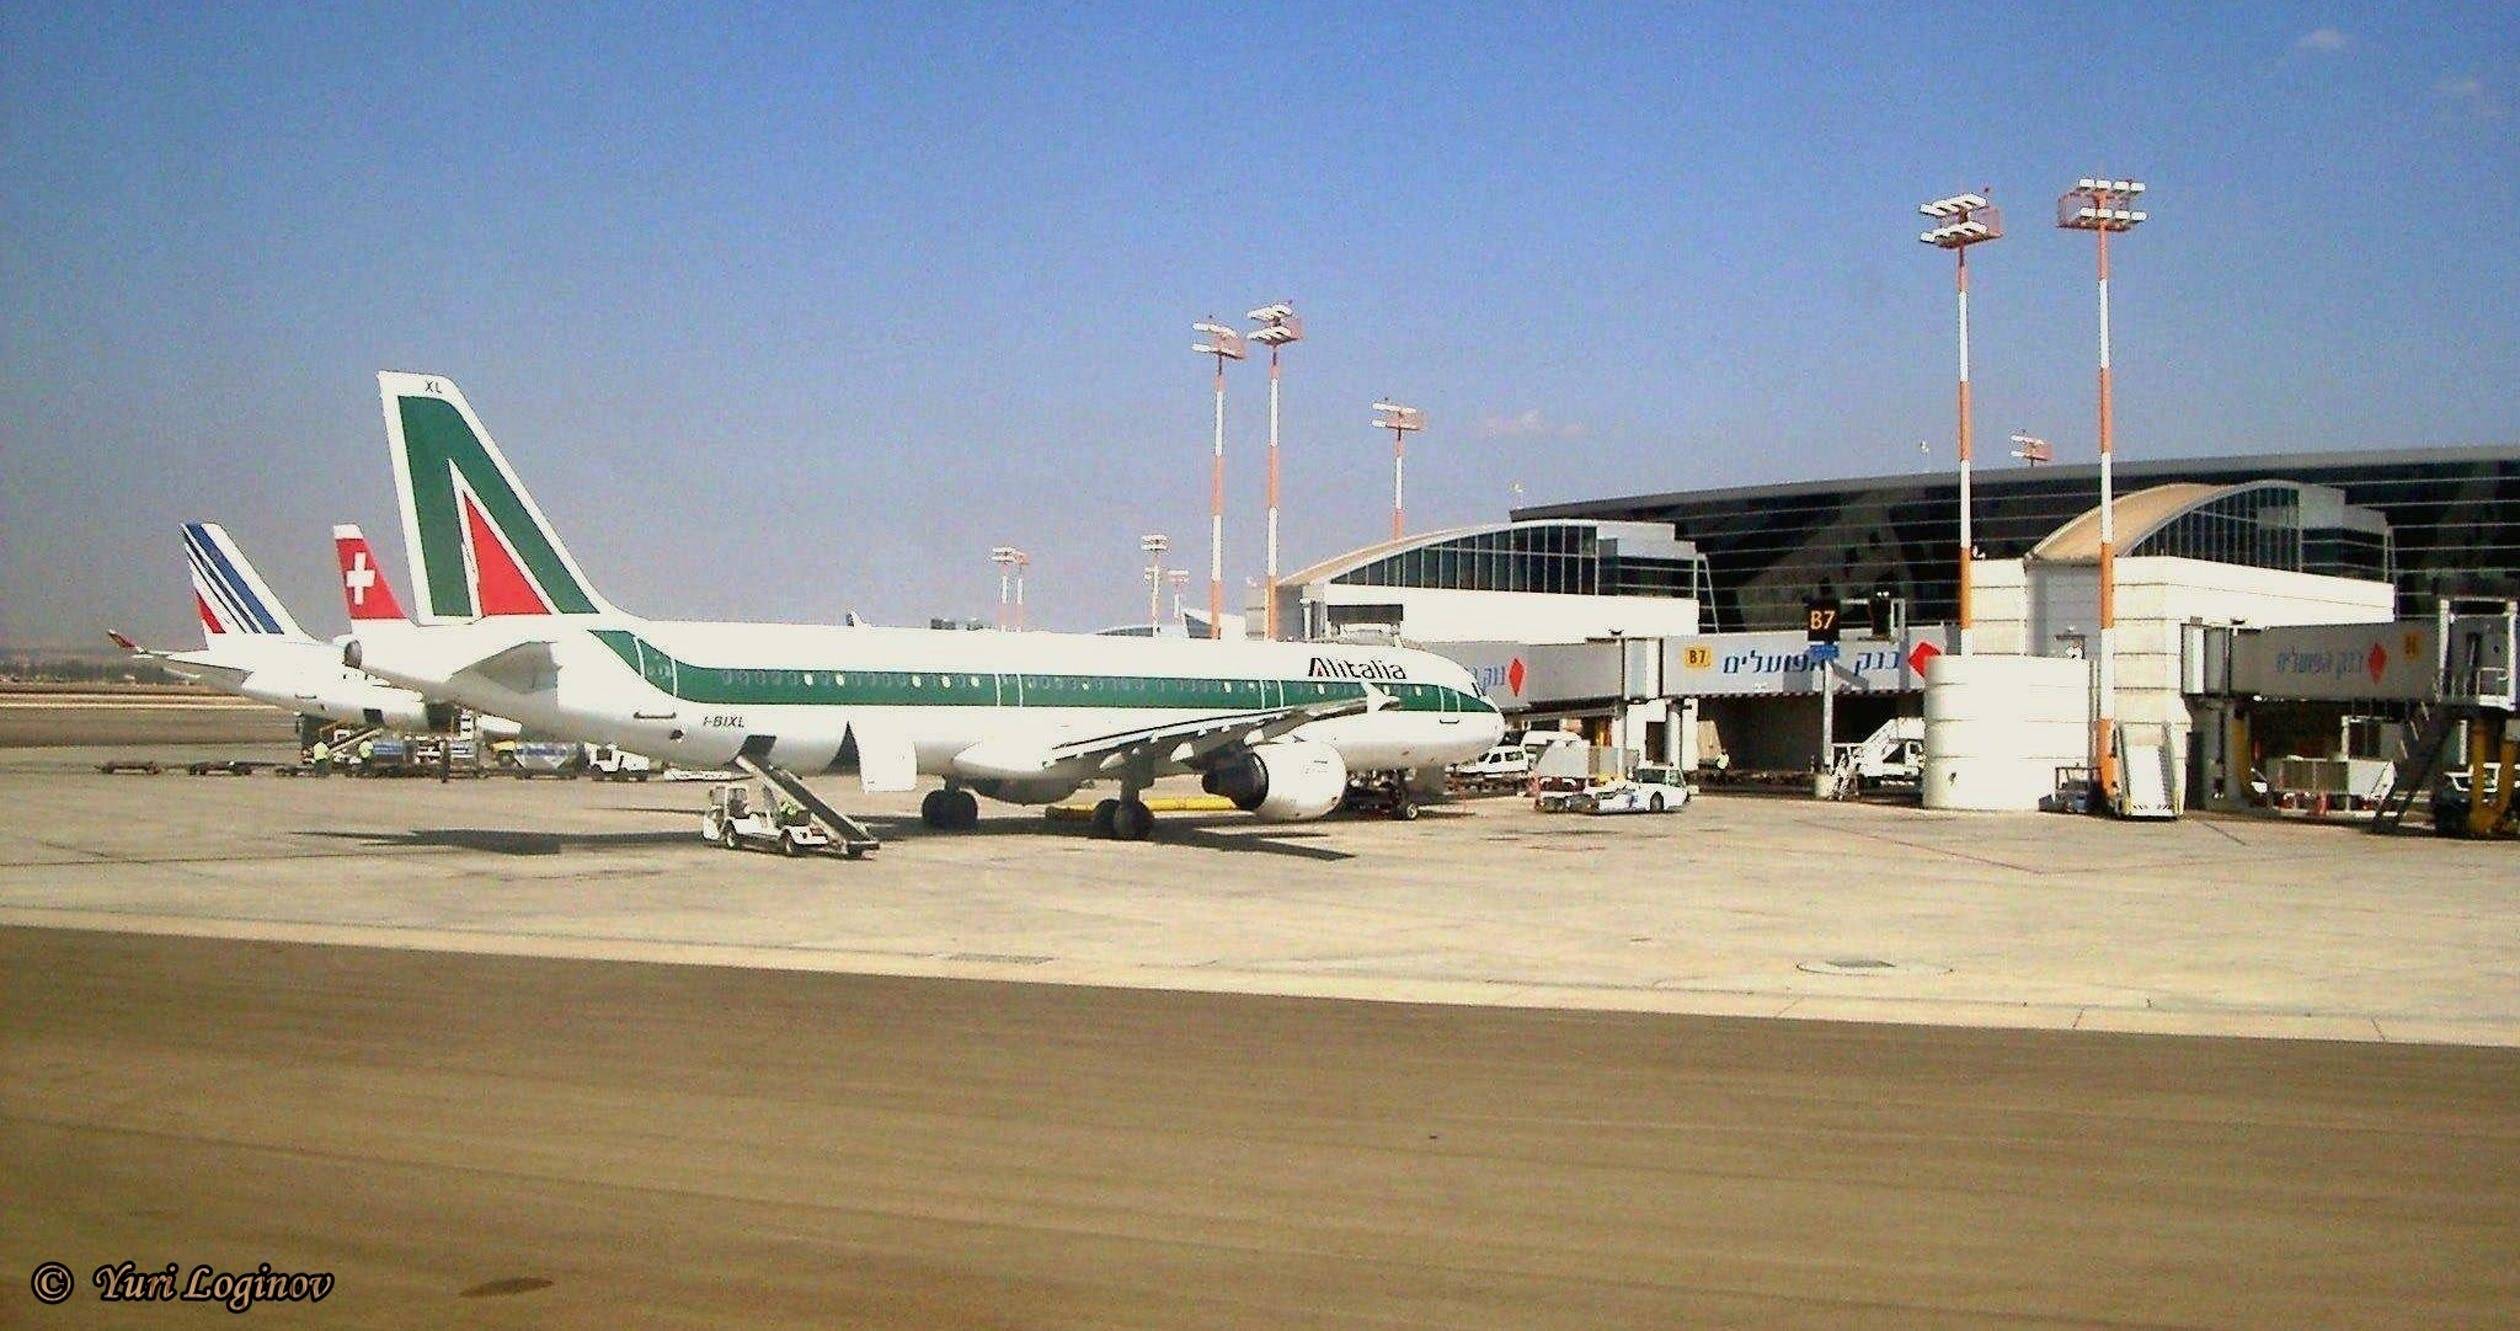 Сколько аэропортов в израиле. какие аэропорты израиля предназначены для международных рейсов? описание основных аэропортов